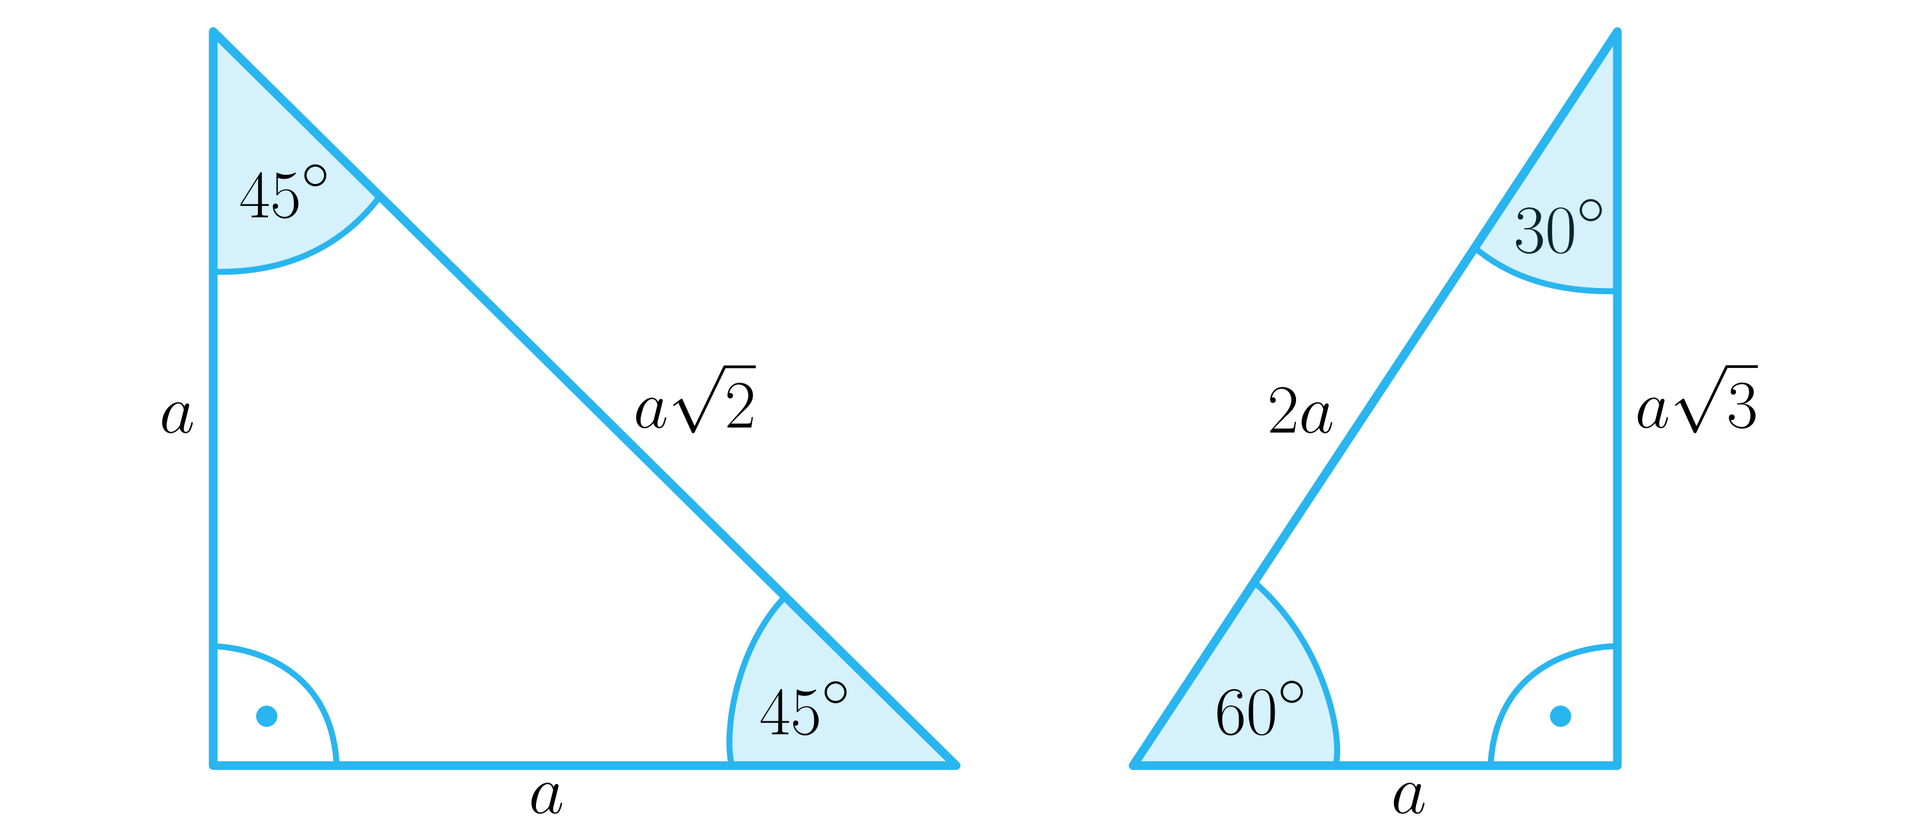 Grafika przedstawia dwa trójkąty prostokątne. Pierwszy trójkąt jest równoramienny. Przyprostokątne mają długość a. Przeciwprostokątna ma długość a2. Kąty między przeciwprostokątnymi a przyprosotkątną wynoszą 45 stopni. Krótsza przyprostokątna drugiego trójkąta ma długość a. Dłuższa przyprostokątna ma długość a3. Przeciwprostokątna ma długość 2 a. Kąt pomiędzy krótszą przyprostokątną a przeciwprostokątną ma 60 stopni. Kąt między dłuższą przyprostokątną a przeciwprostokątną ma 30 stopni. 